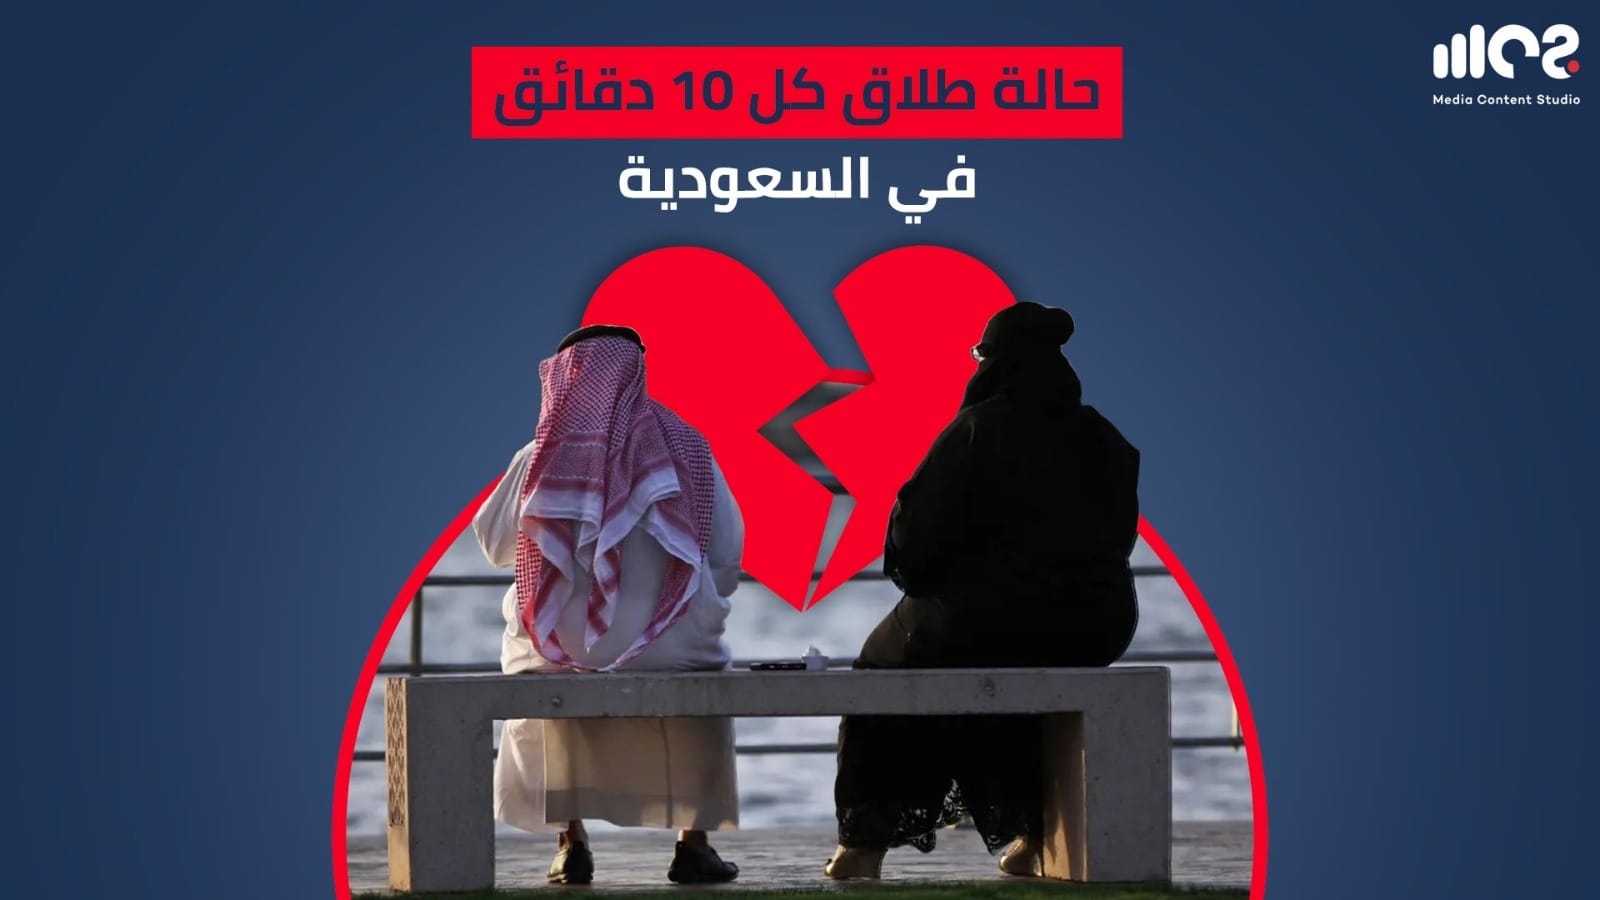 حالة طلاق كل 10 دقائق في السعودية